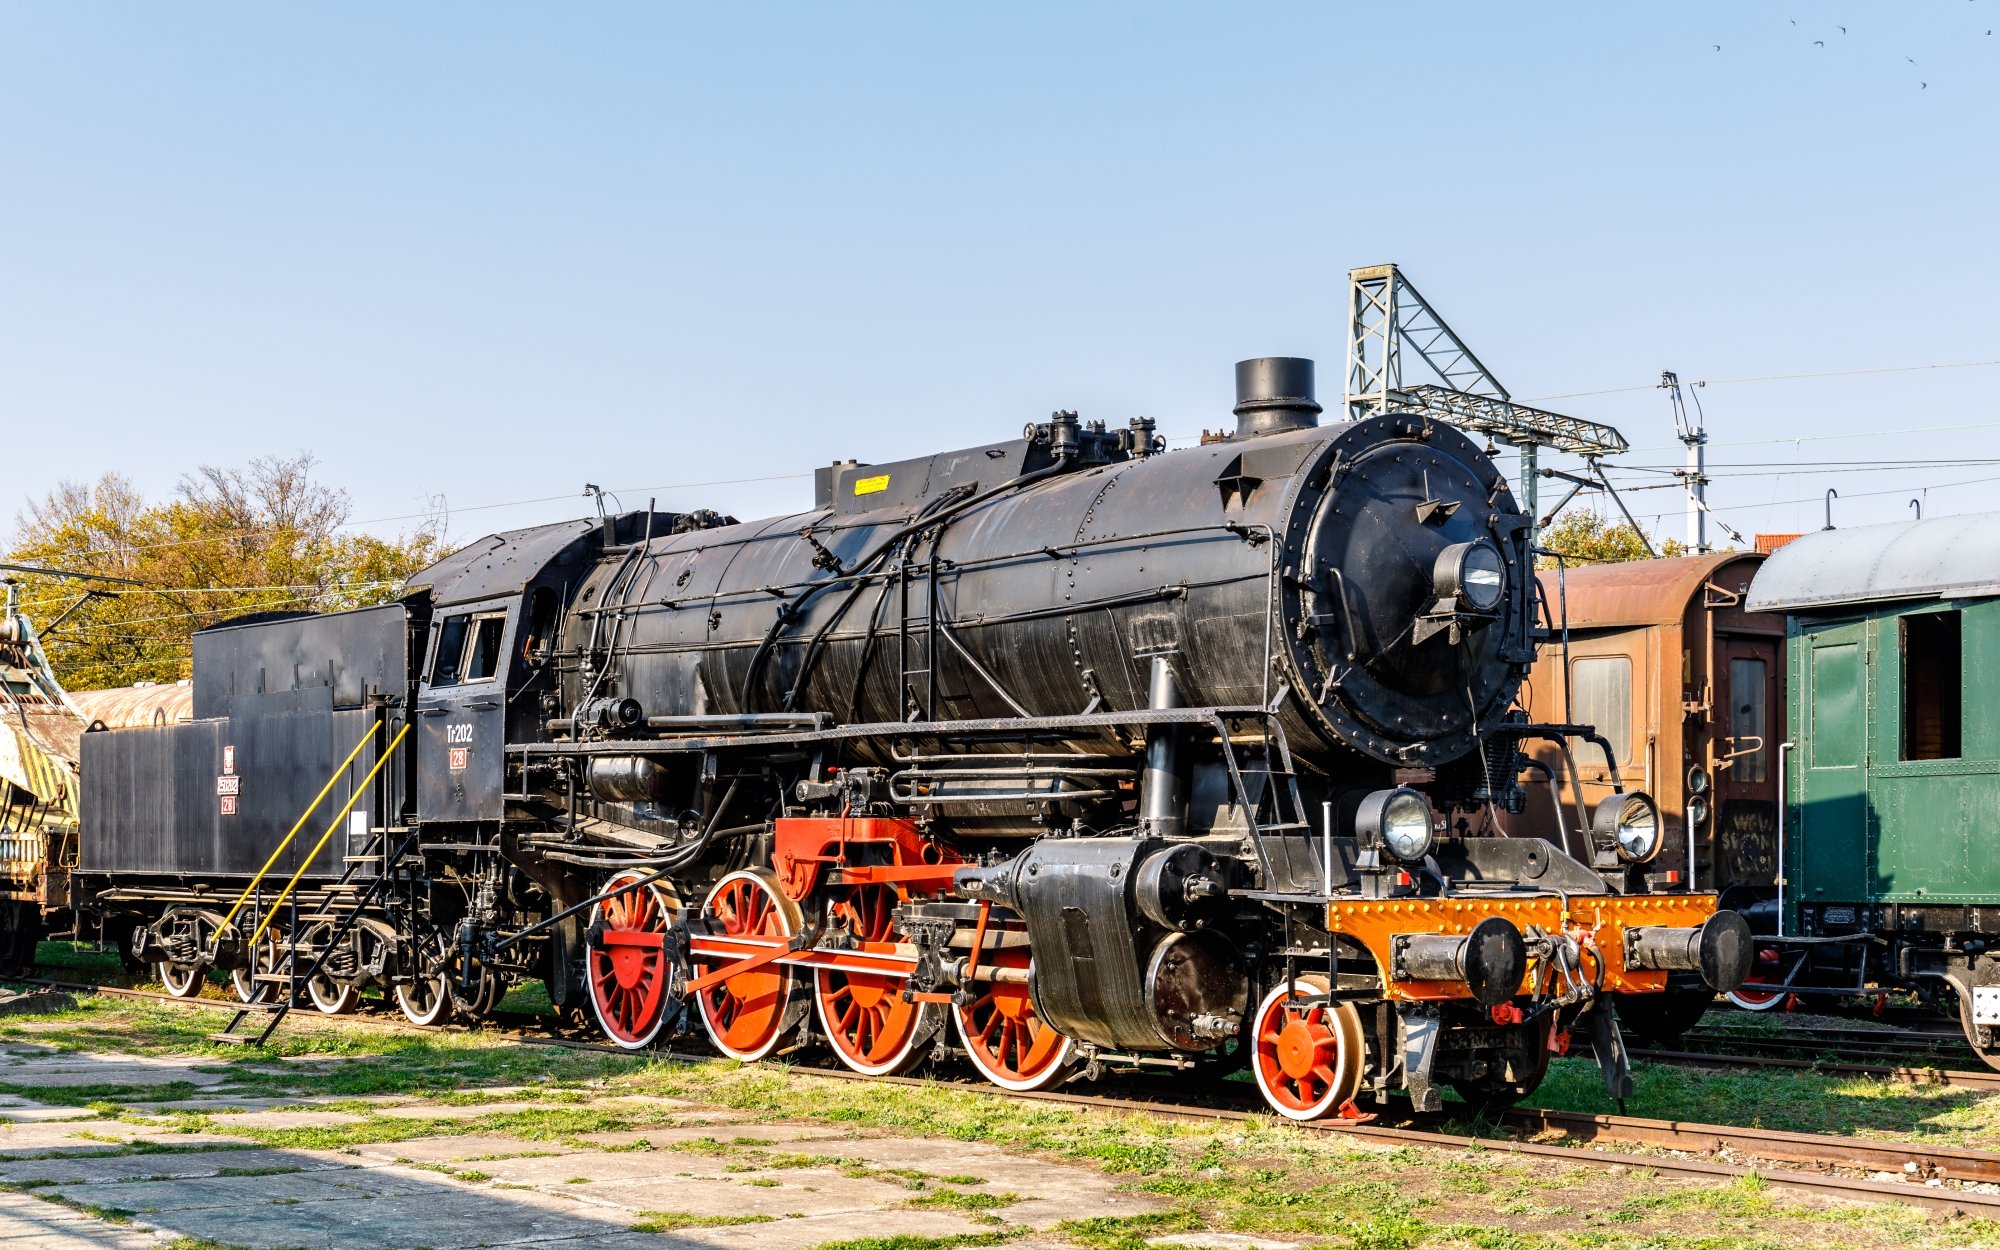 parn-lokomotiva-459-0-cojeco-cz